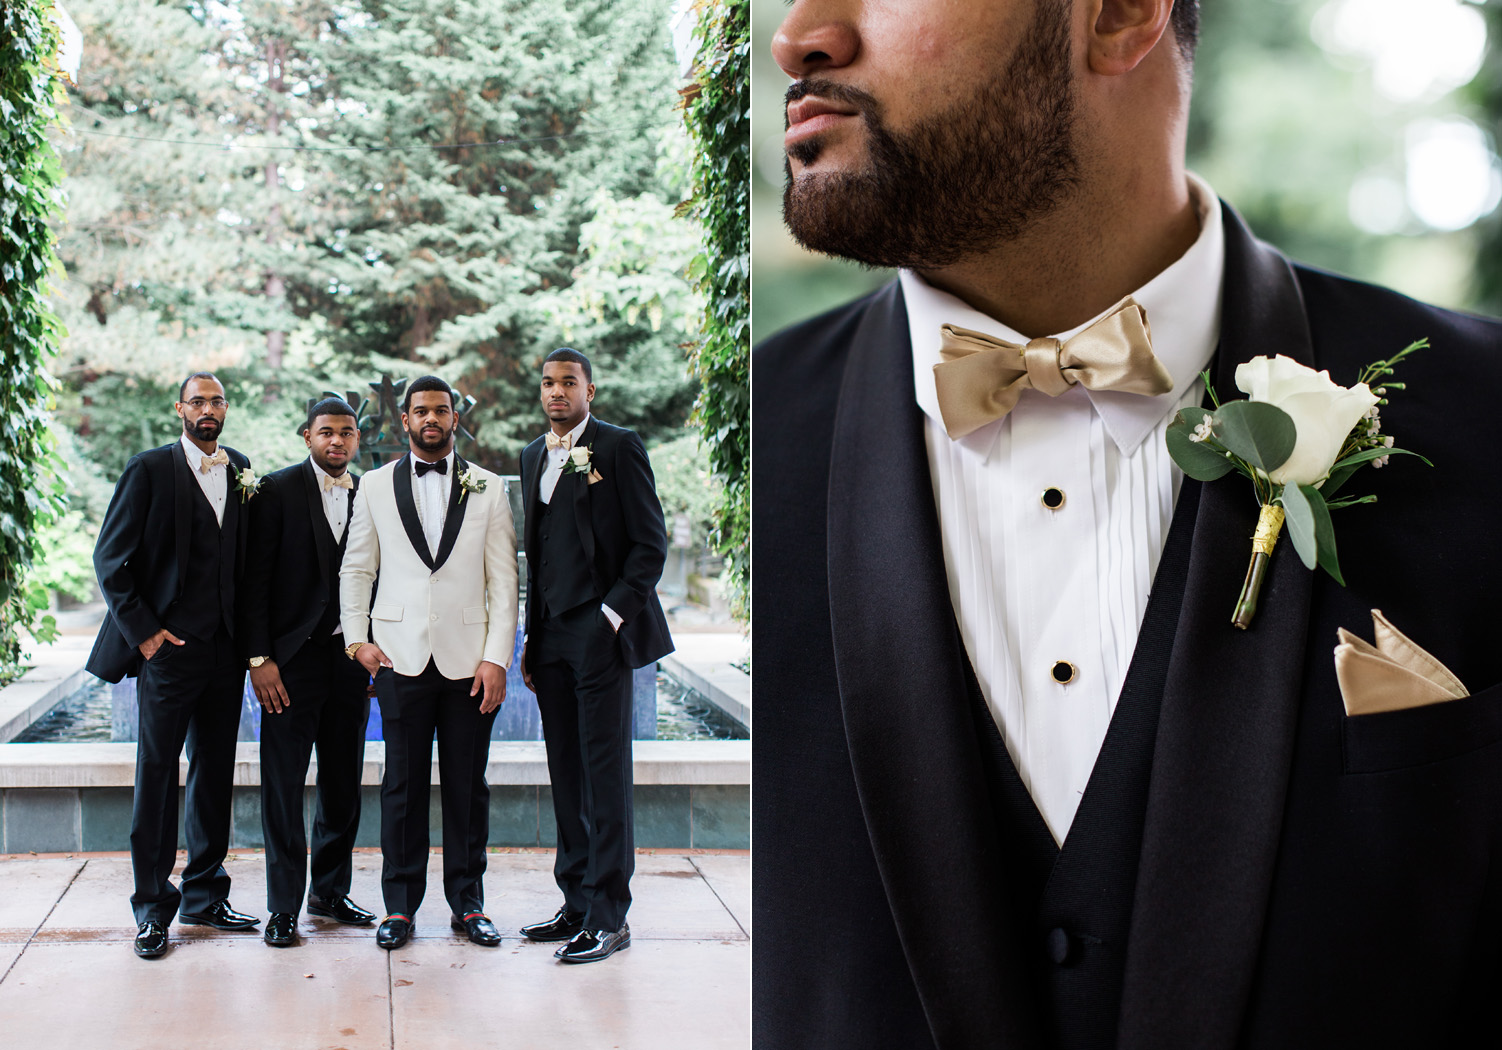 black tie groom and groomsmen wedding attire seattle.jpg